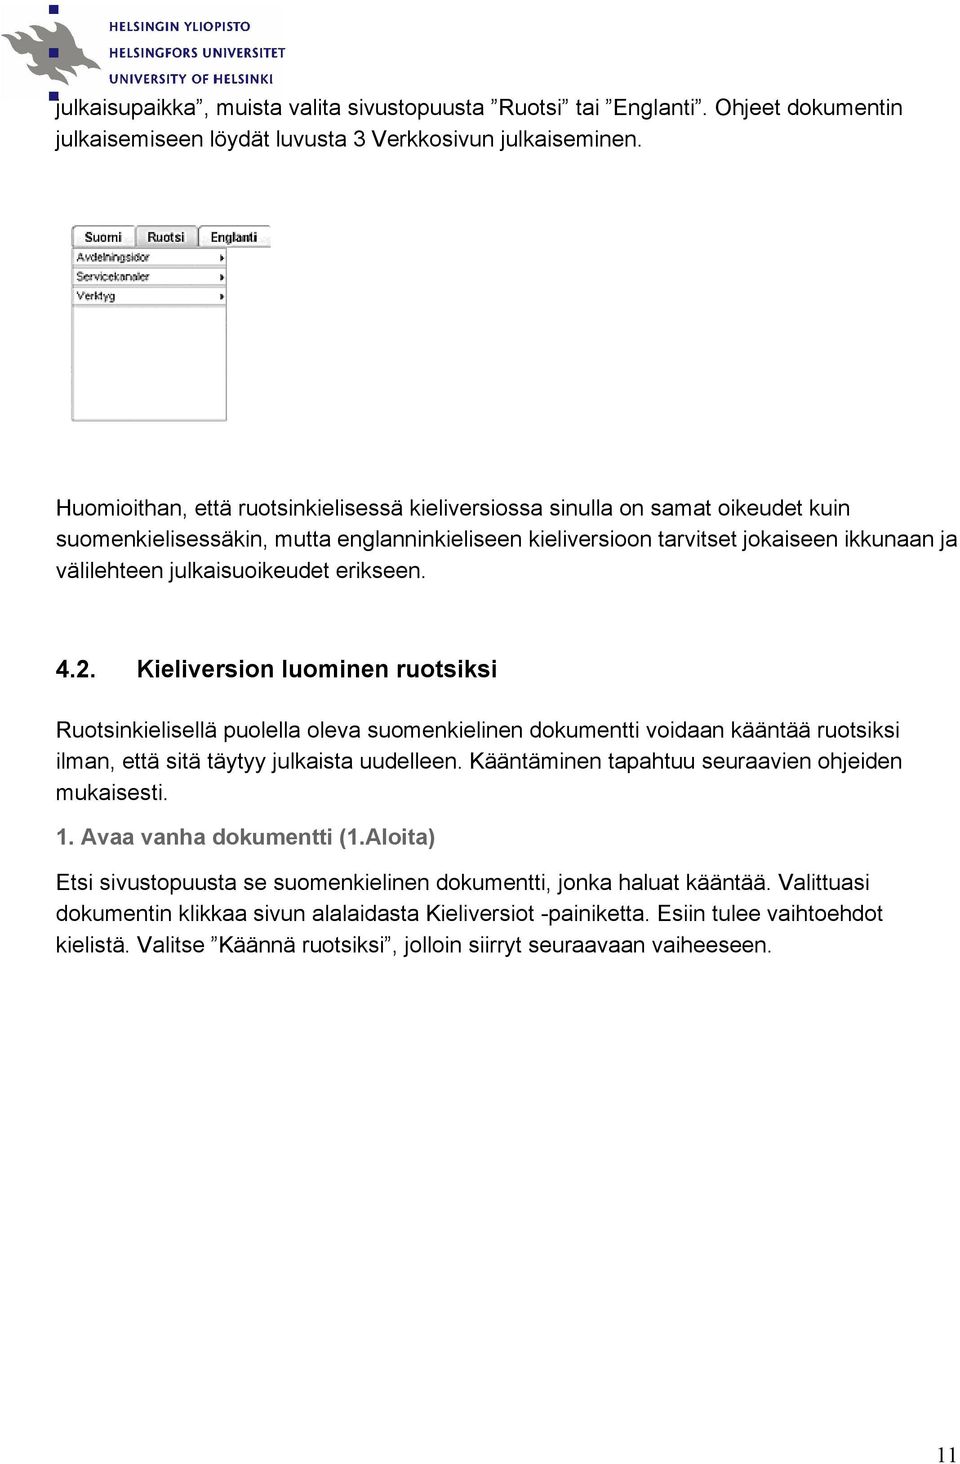 julkaisuoikeudet erikseen. 4.2. Kieliversion luominen ruotsiksi Ruotsinkielisellä puolella oleva suomenkielinen dokumentti voidaan kääntää ruotsiksi ilman, että sitä täytyy julkaista uudelleen.